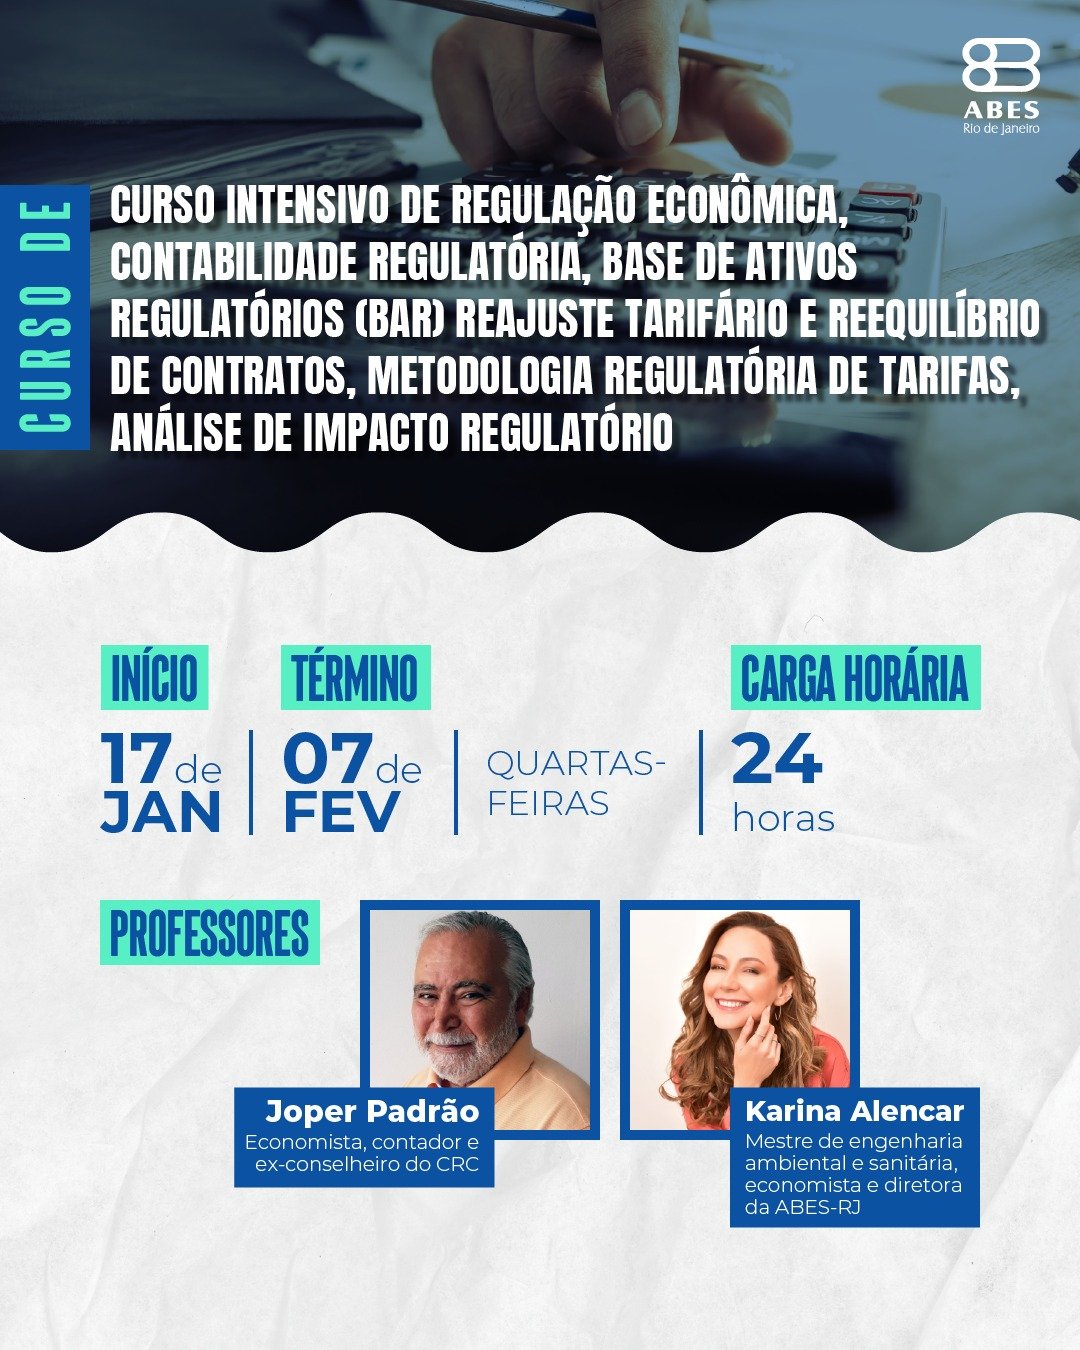 ABES-Rio presente na 77ª Semana Oficial da Engenharia e da